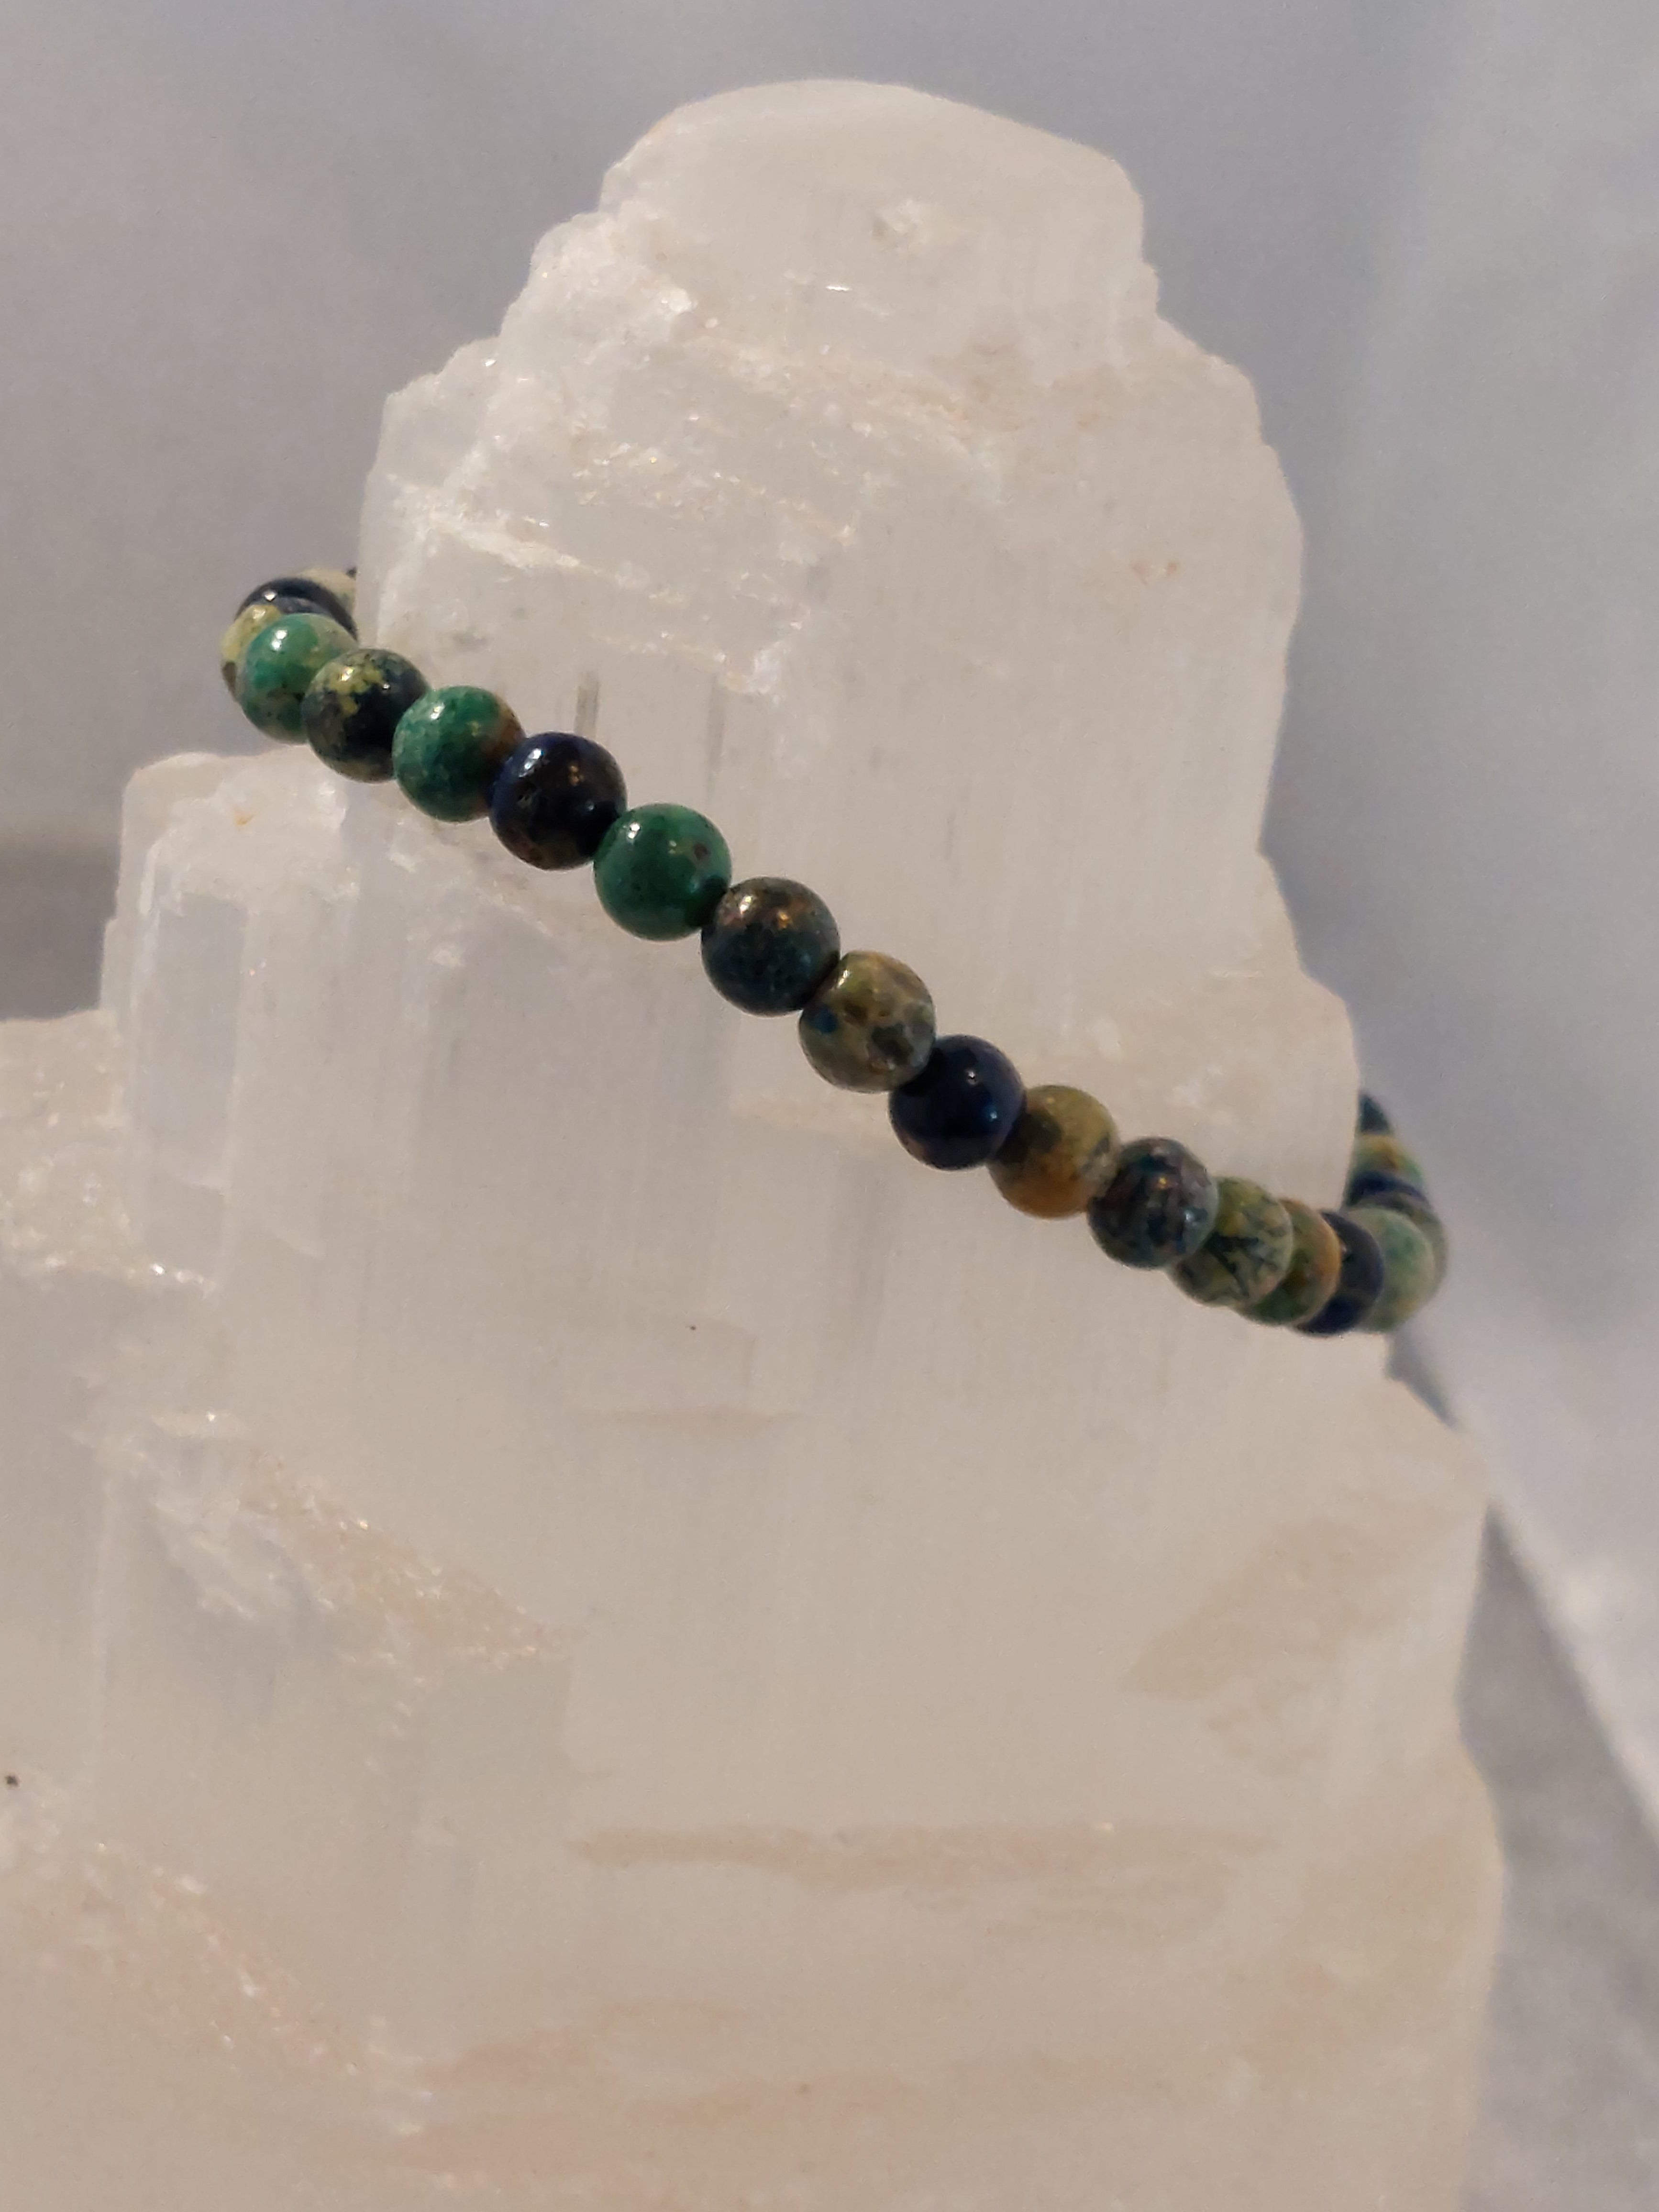 Malachite and Azurite Polished Bead Bracelet - 5mm Bead